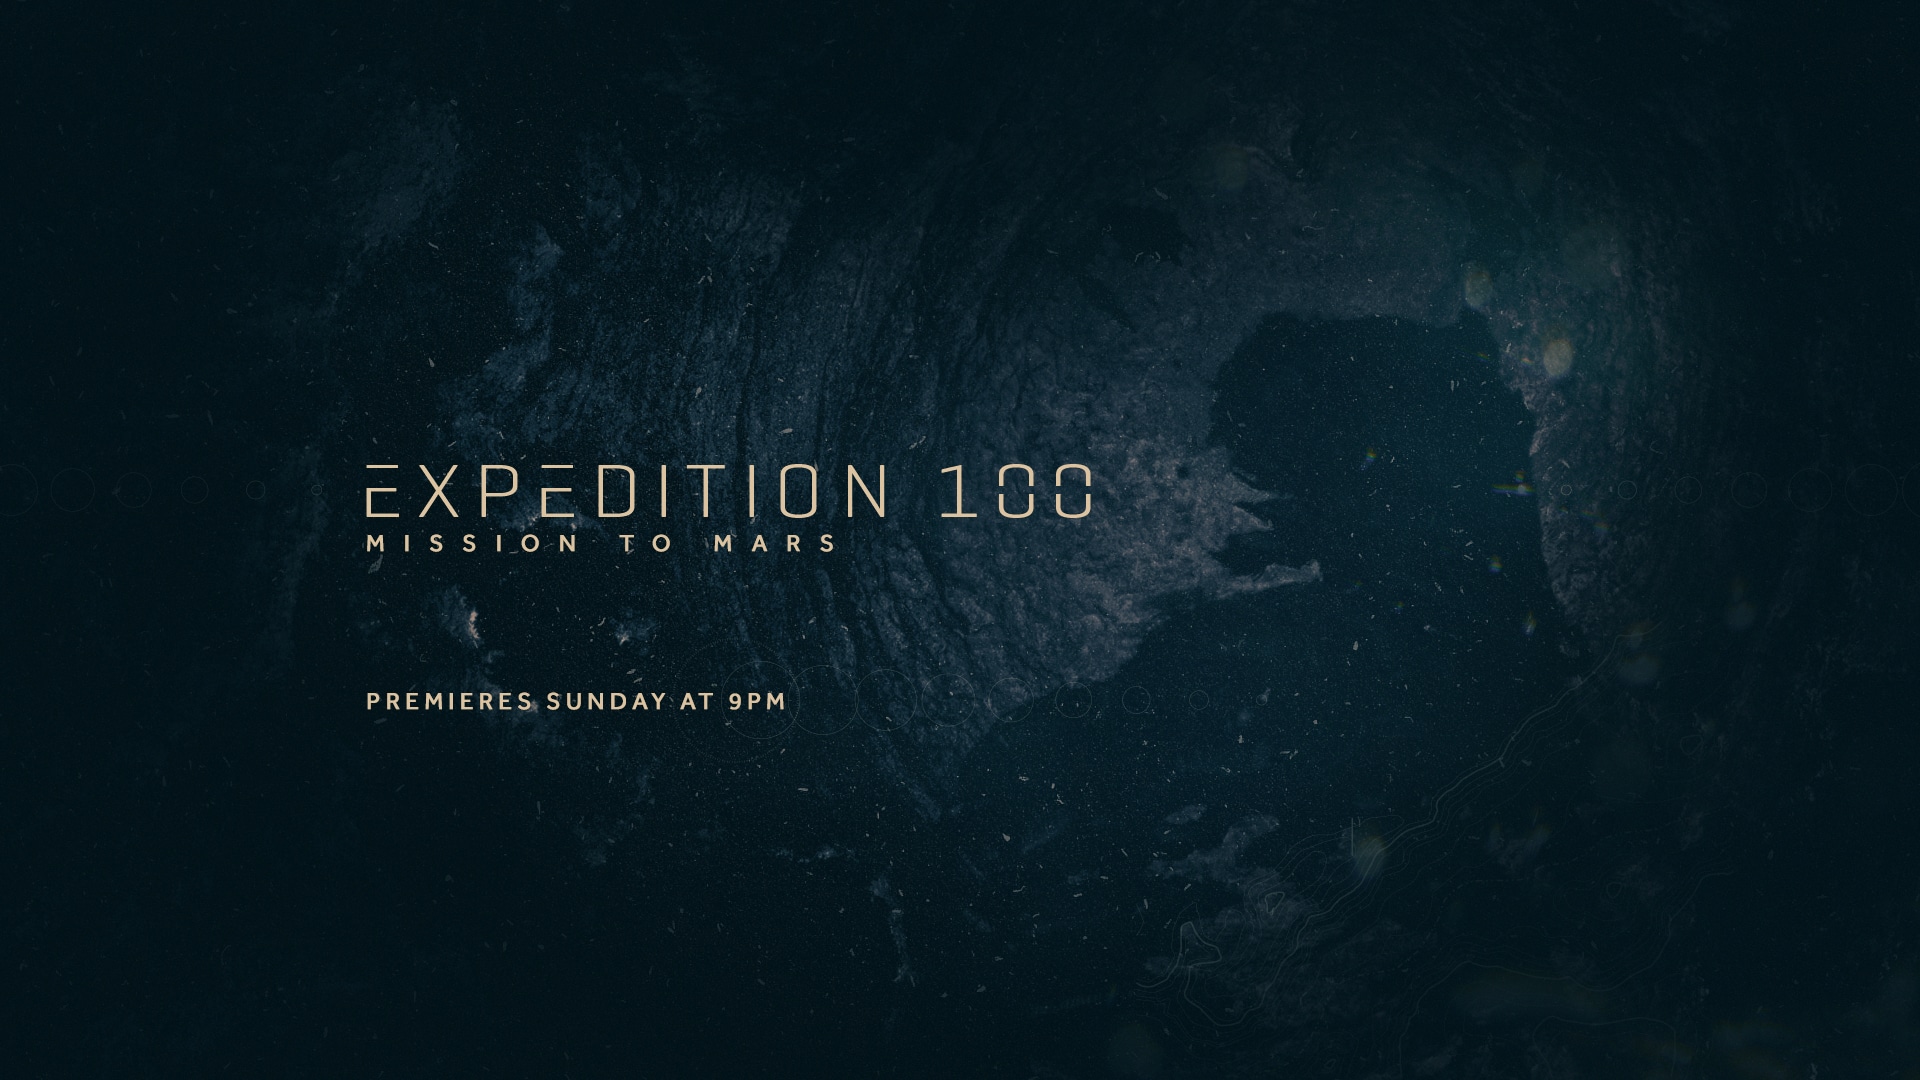 Vue sur un cratère avec le titre de l’émission : Expedition 100 - mission to mars